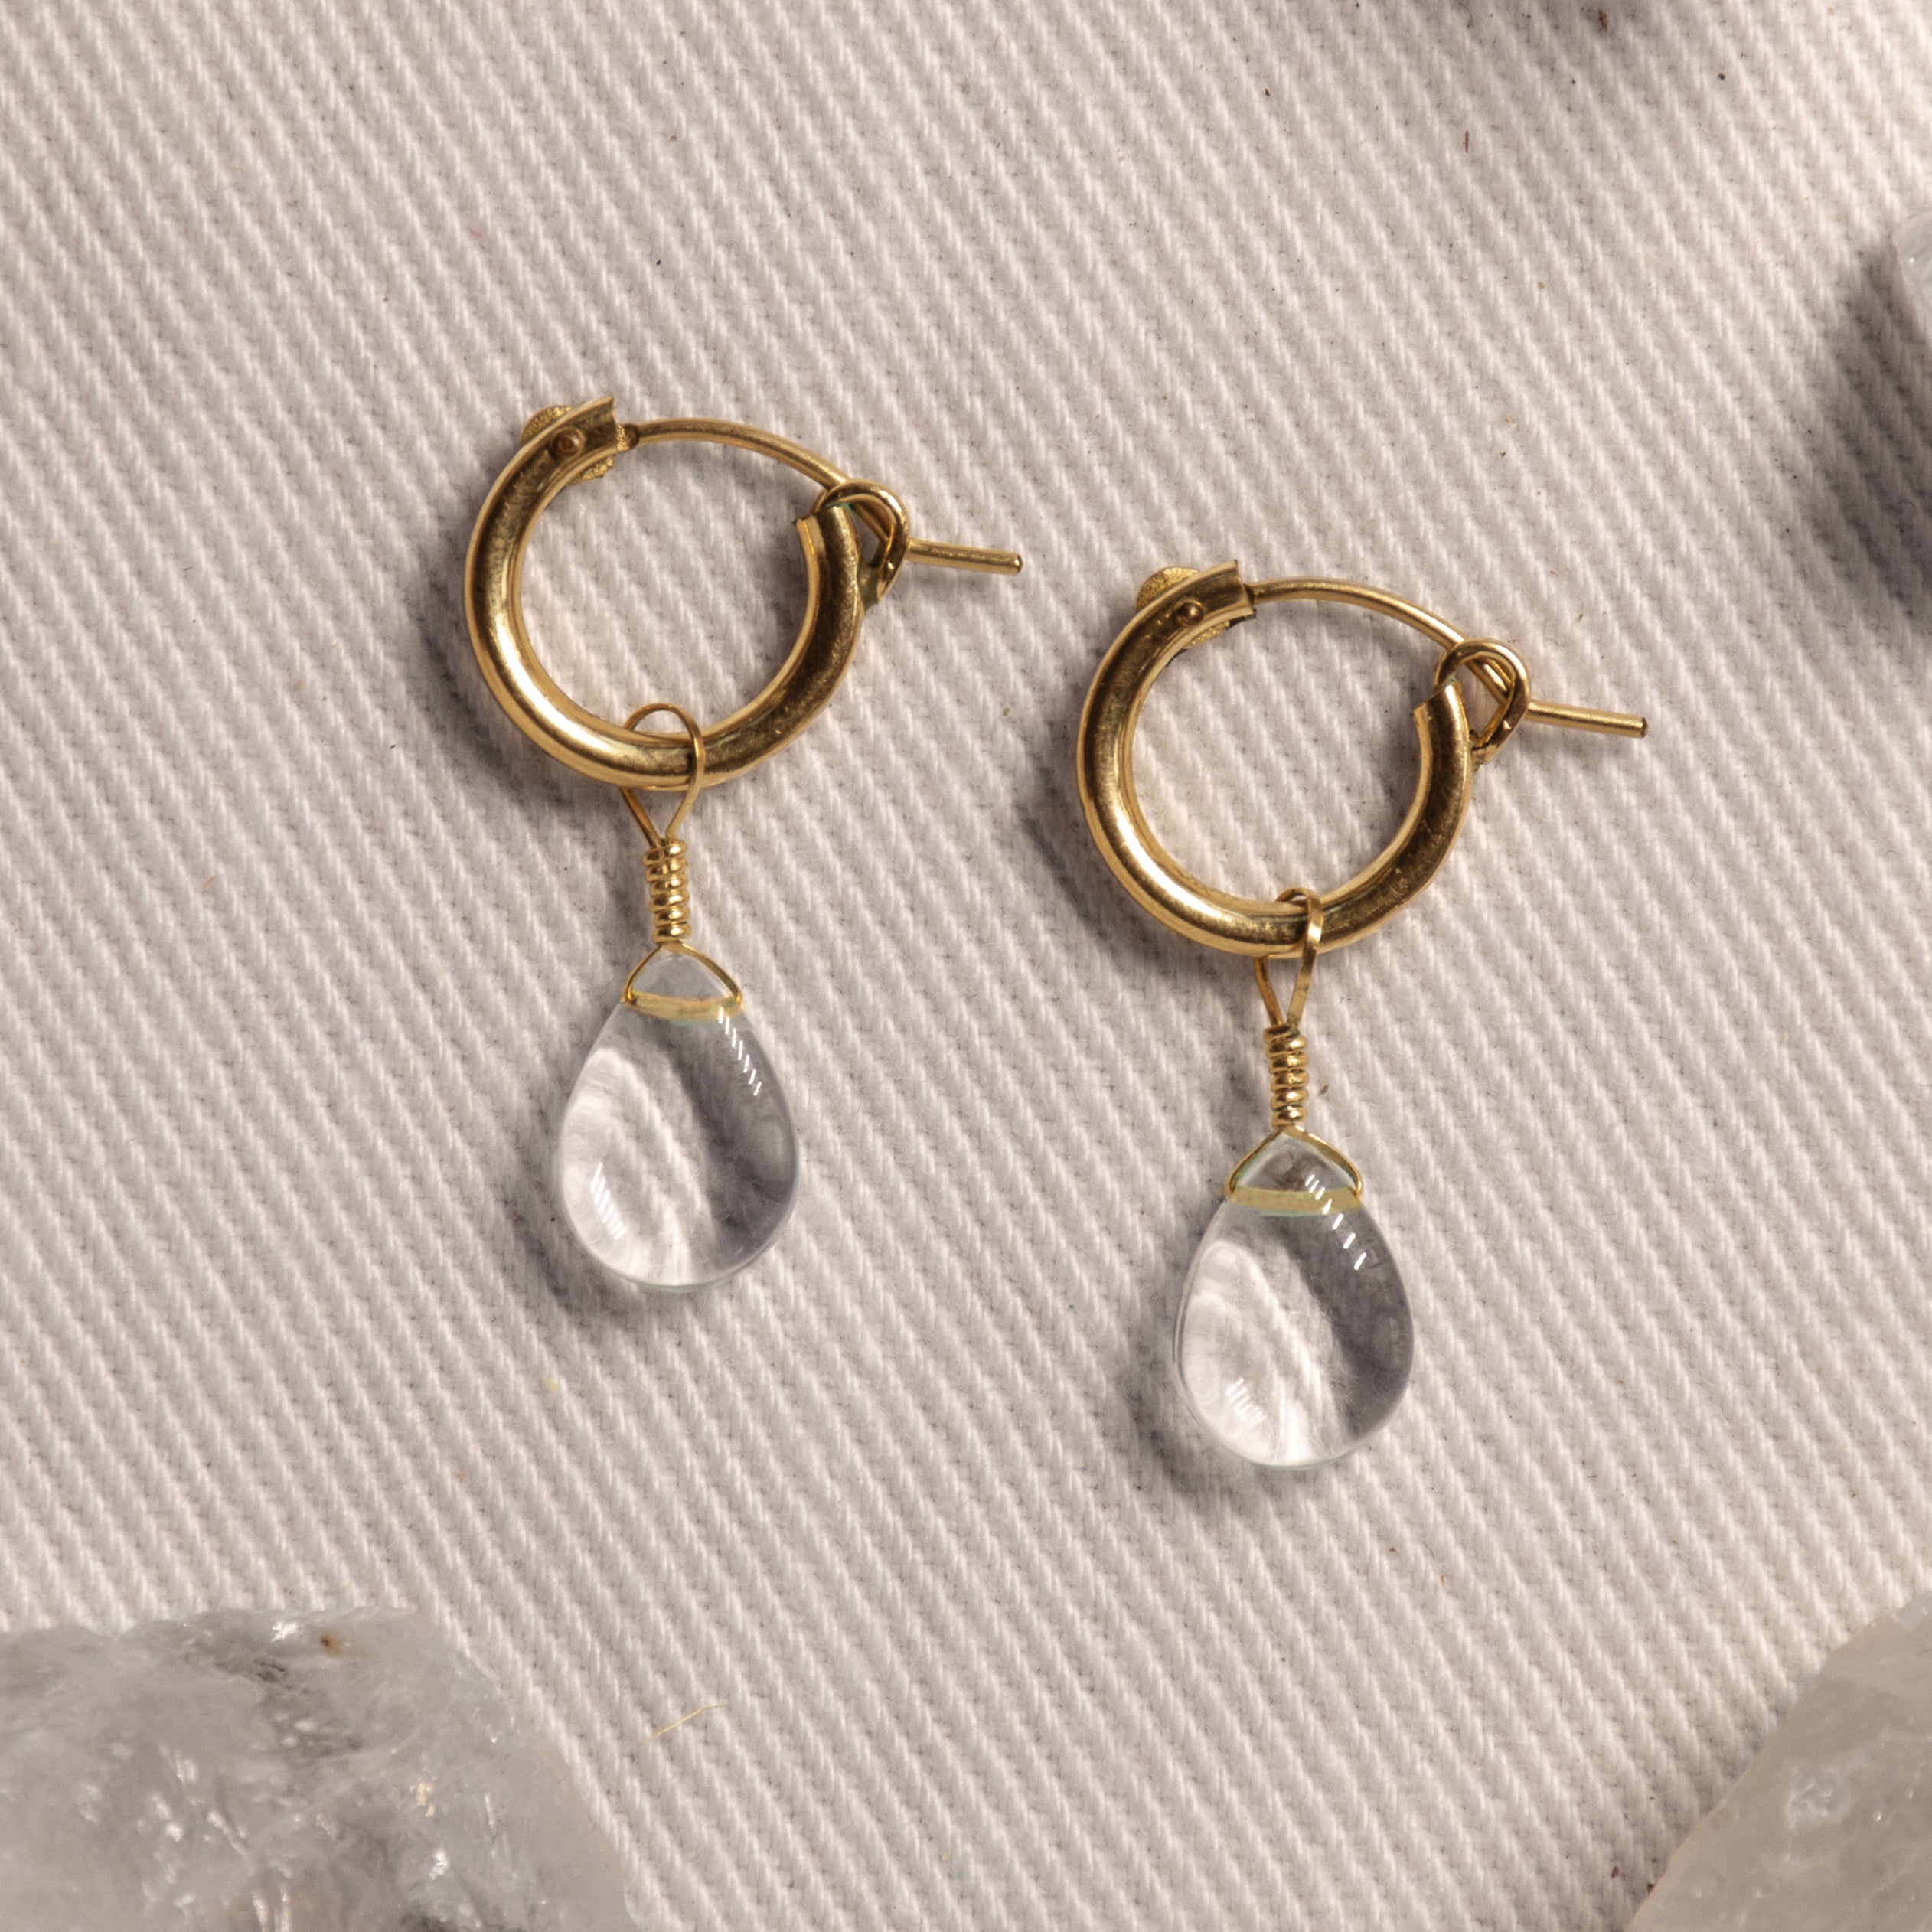 clear quartz gemstone jewelry store earrings